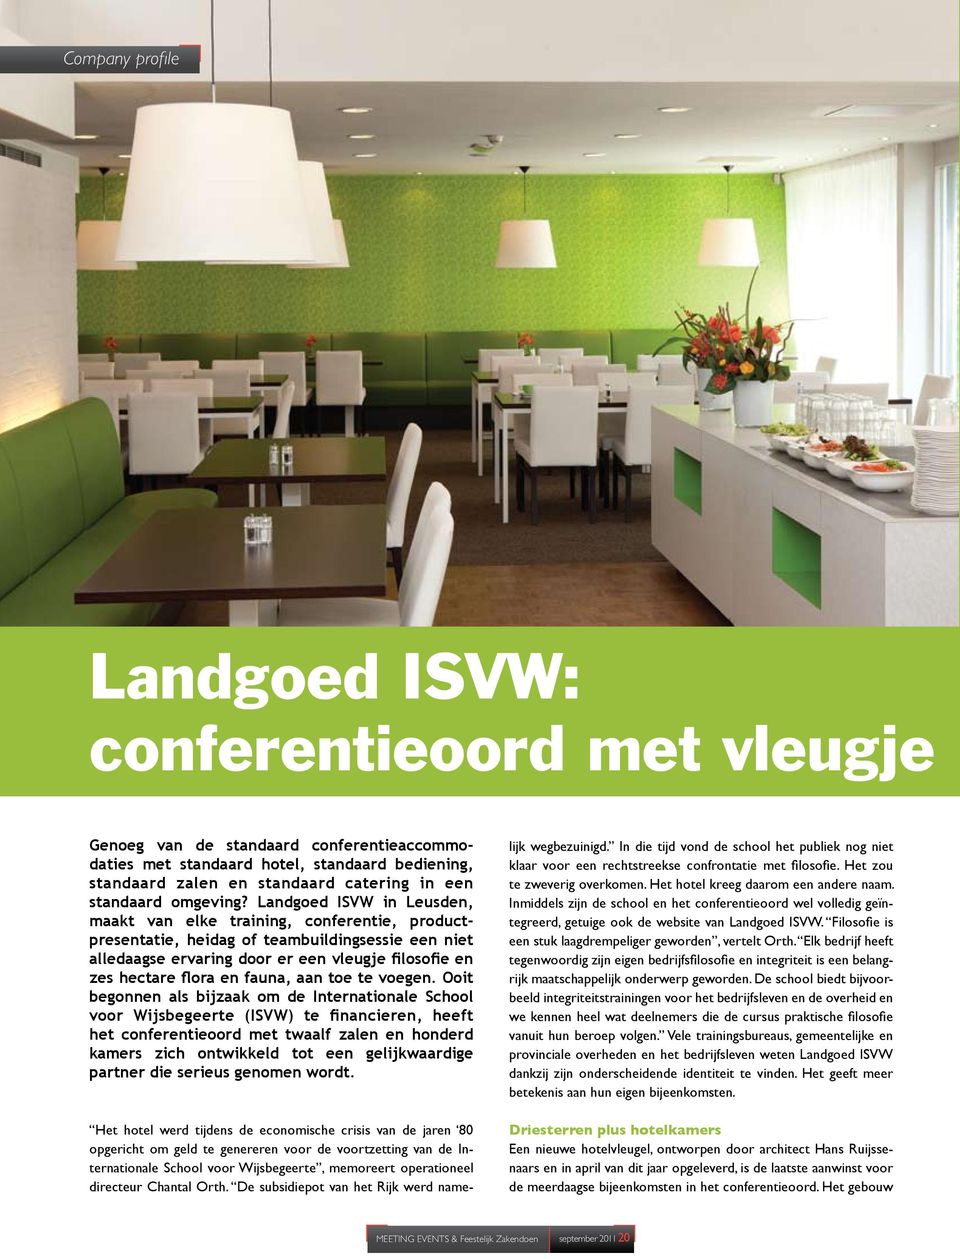 Landgoed ISVW in Leusden, maakt van elke training, conferentie, productpresentatie, heidag of teambuildingsessie een niet alledaagse ervaring door er een vleugje filosofie en zes hectare flora en